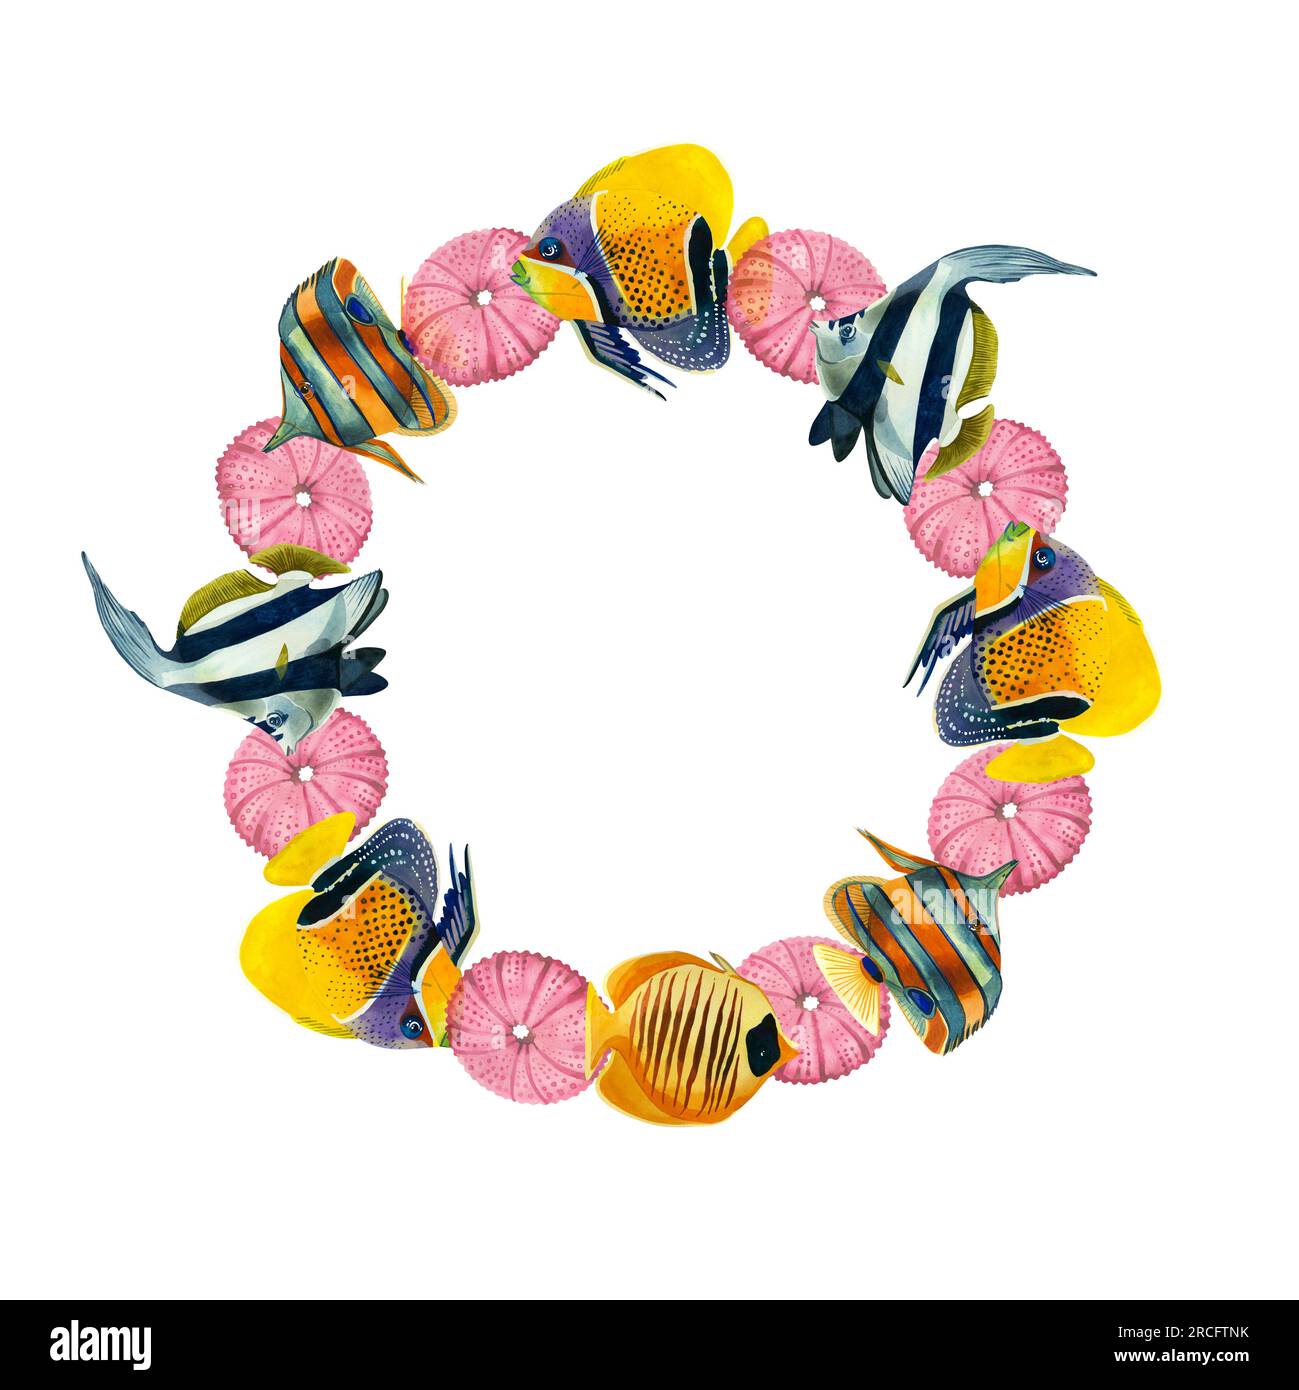 Cadre rond de poissons tropicaux et étoiles roses sur fond blanc. Tous les éléments sont dessinés à la main à l'aquarelle sur fond blanc. Banque D'Images